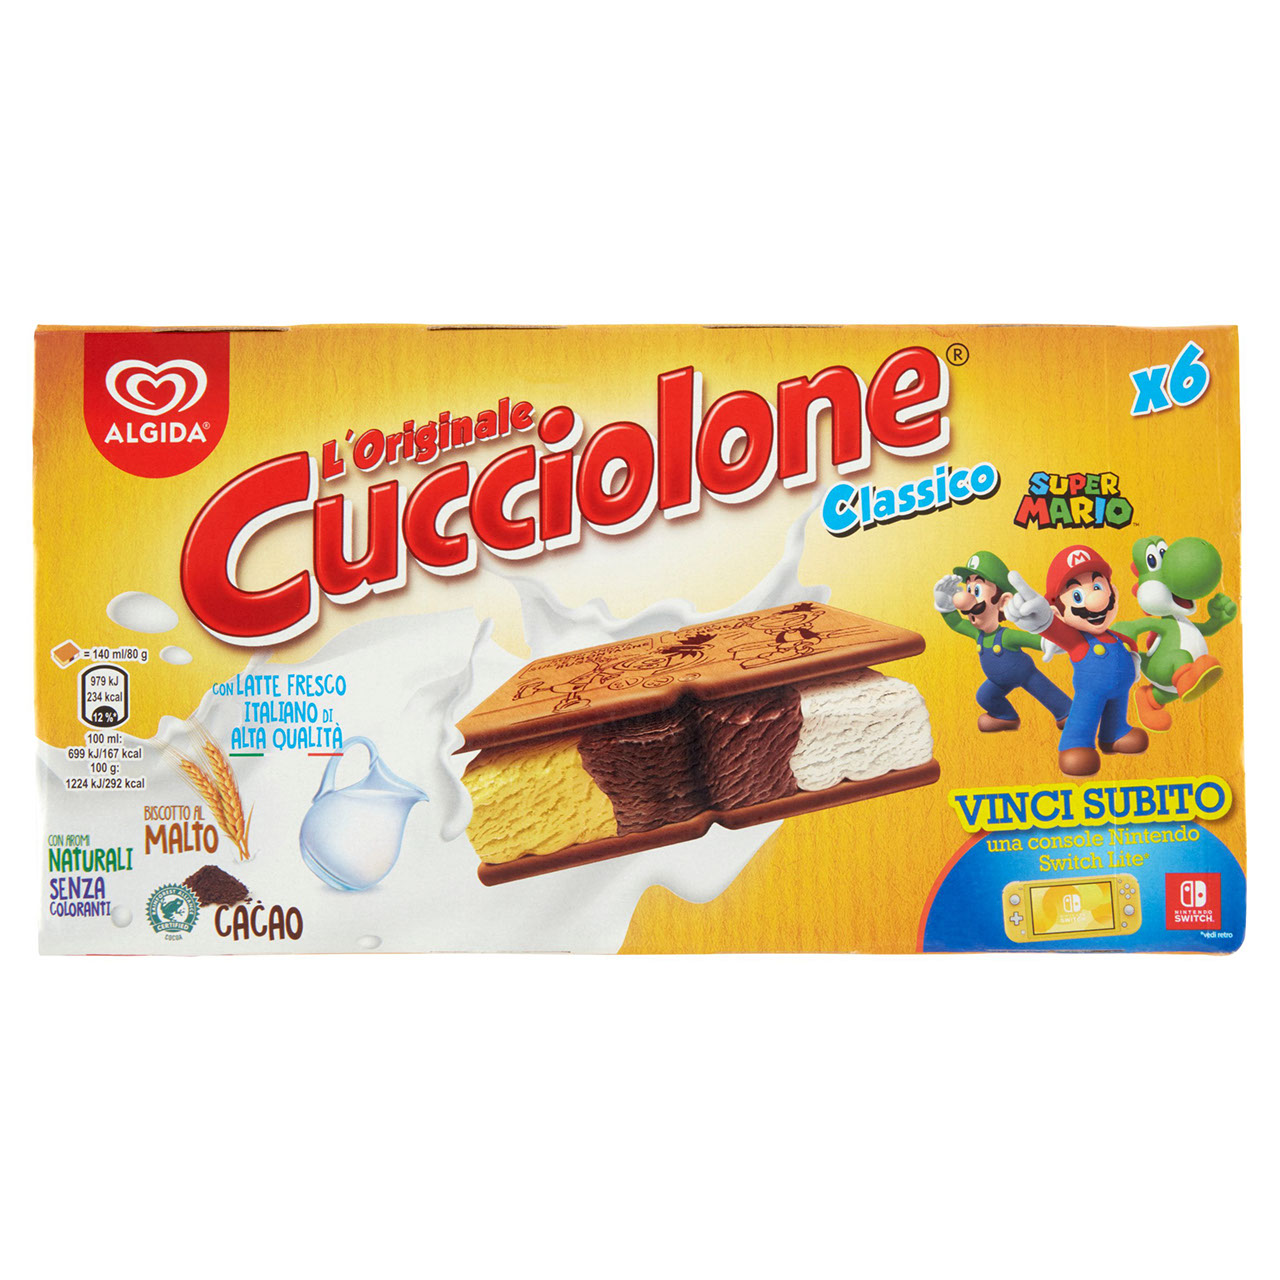 Algida Cucciolone Classico 6 x 80 g